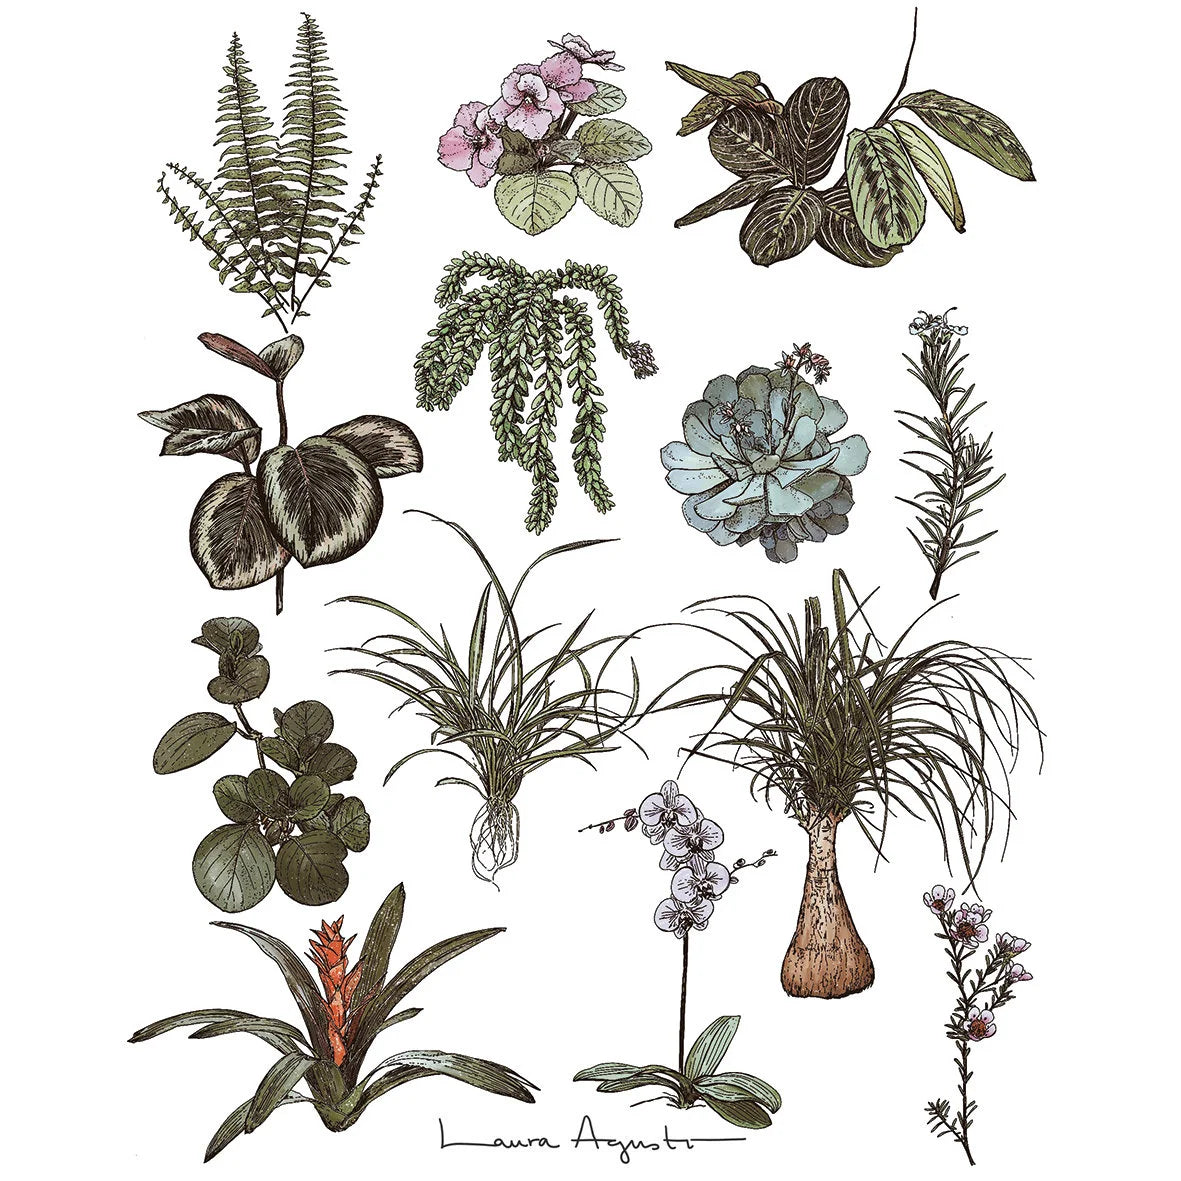 Print Plantas seguras de Laura Agustí que tiene ilustraciones de plantas aptas para la convicencia con gatos